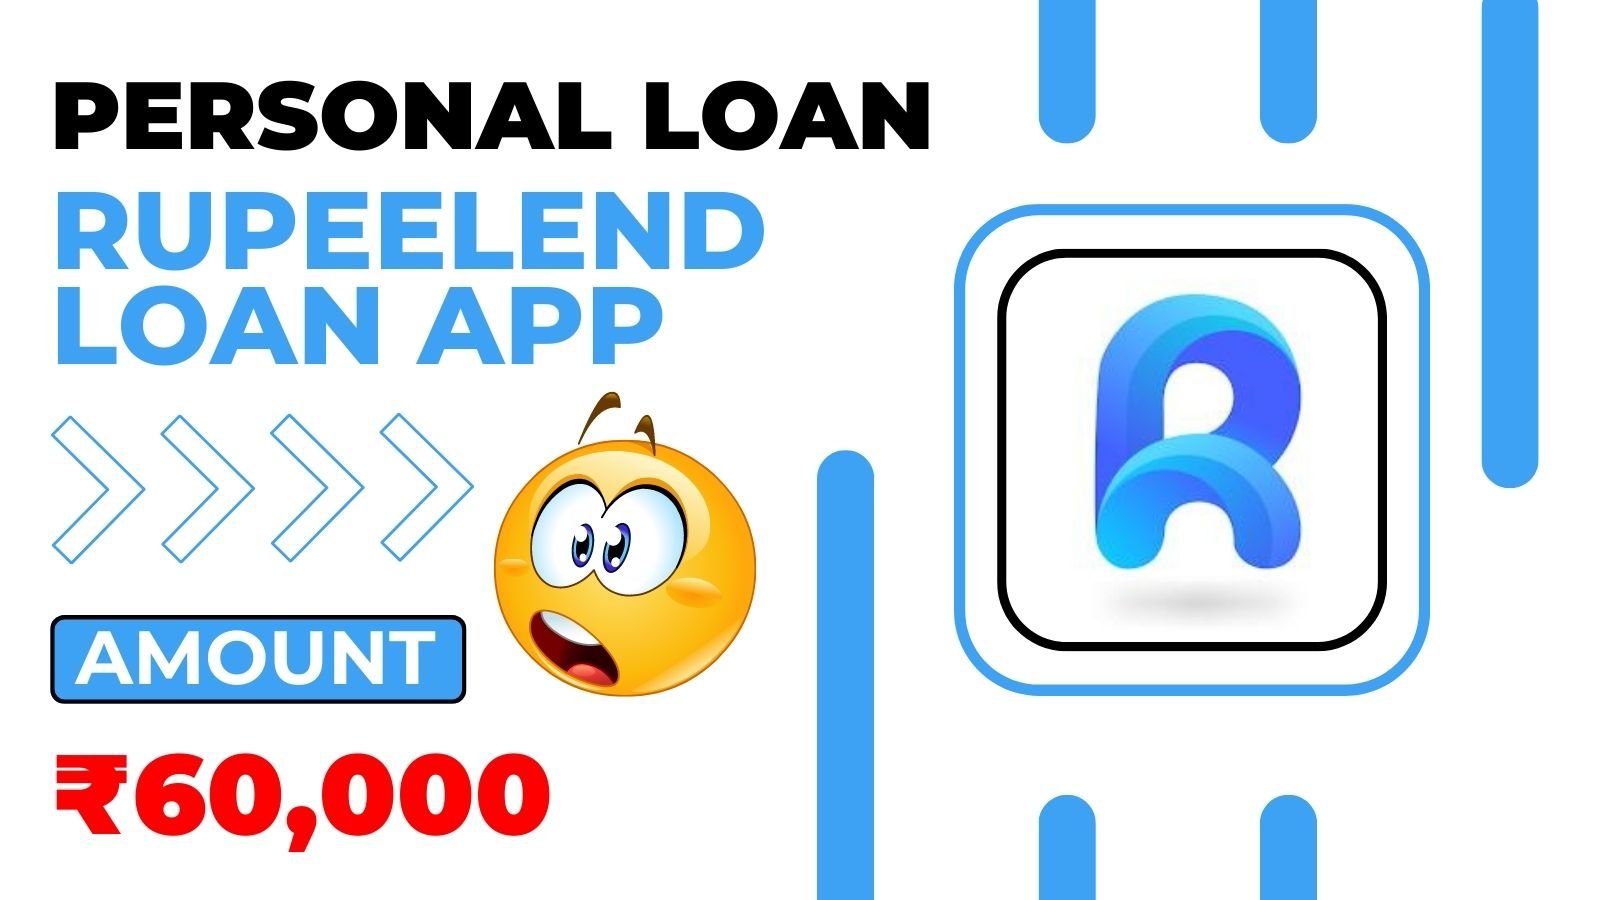 RupeeLend Loan App Loan Amount